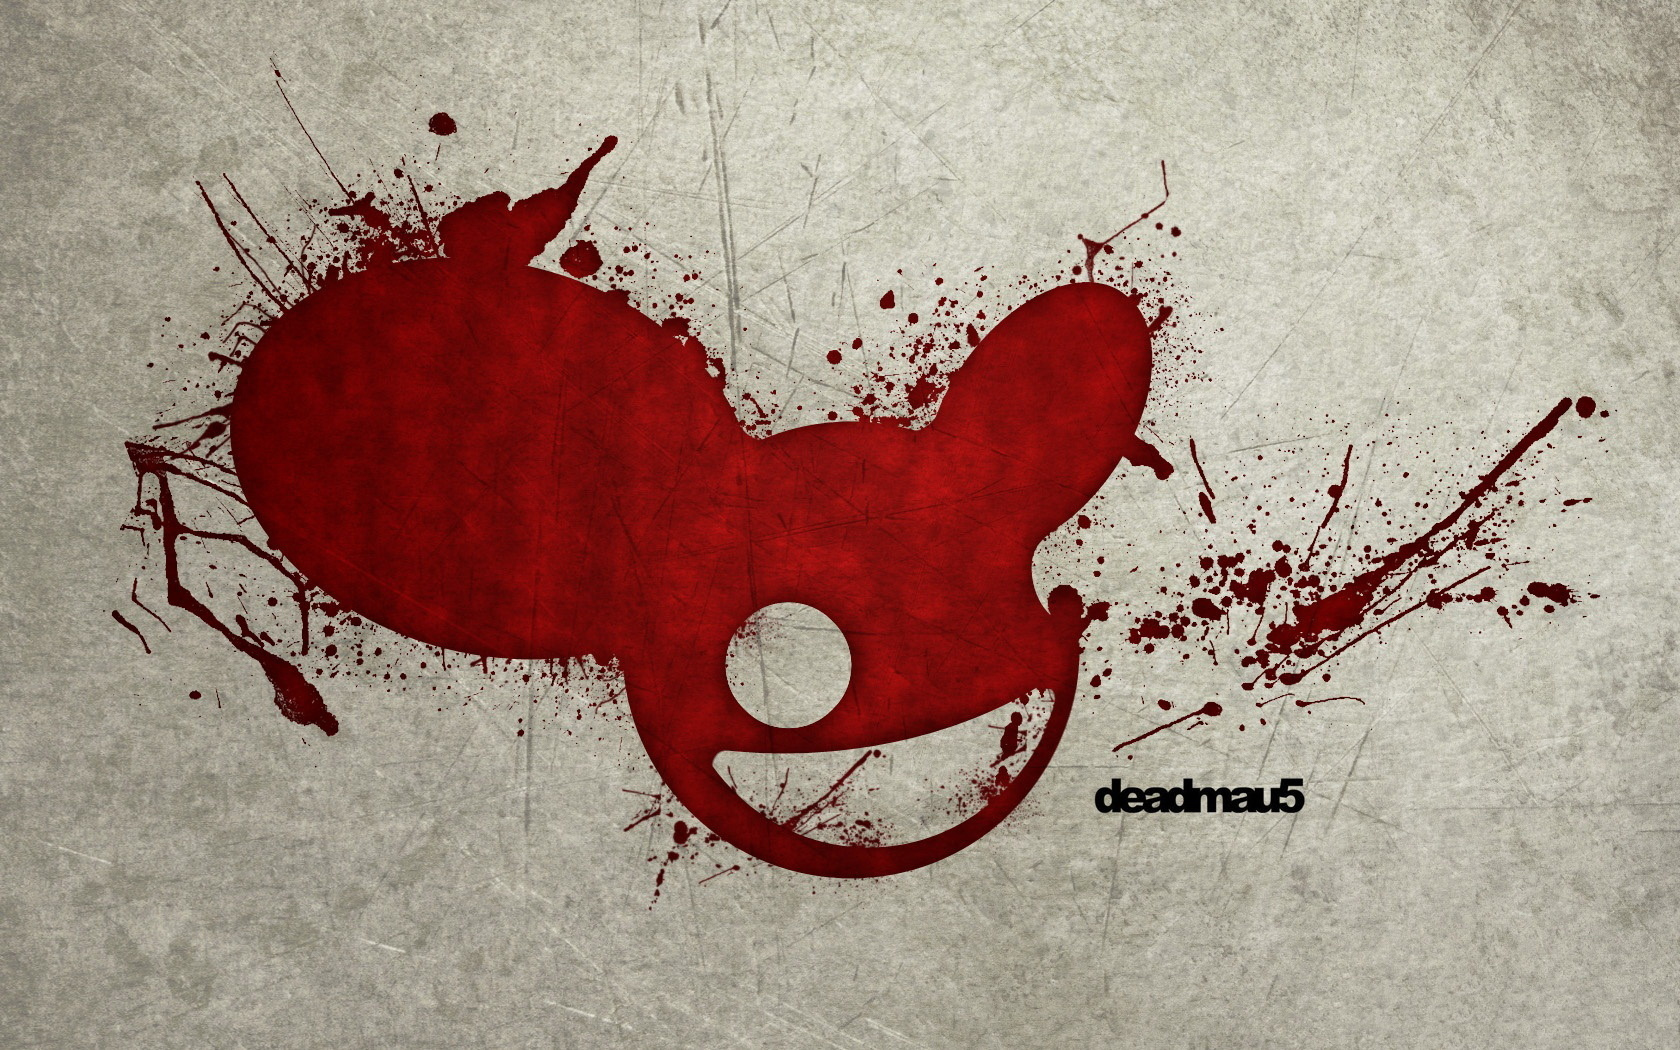 3d обои Логотип диджея deadmau5 нарисован кровью  кровь # 48942